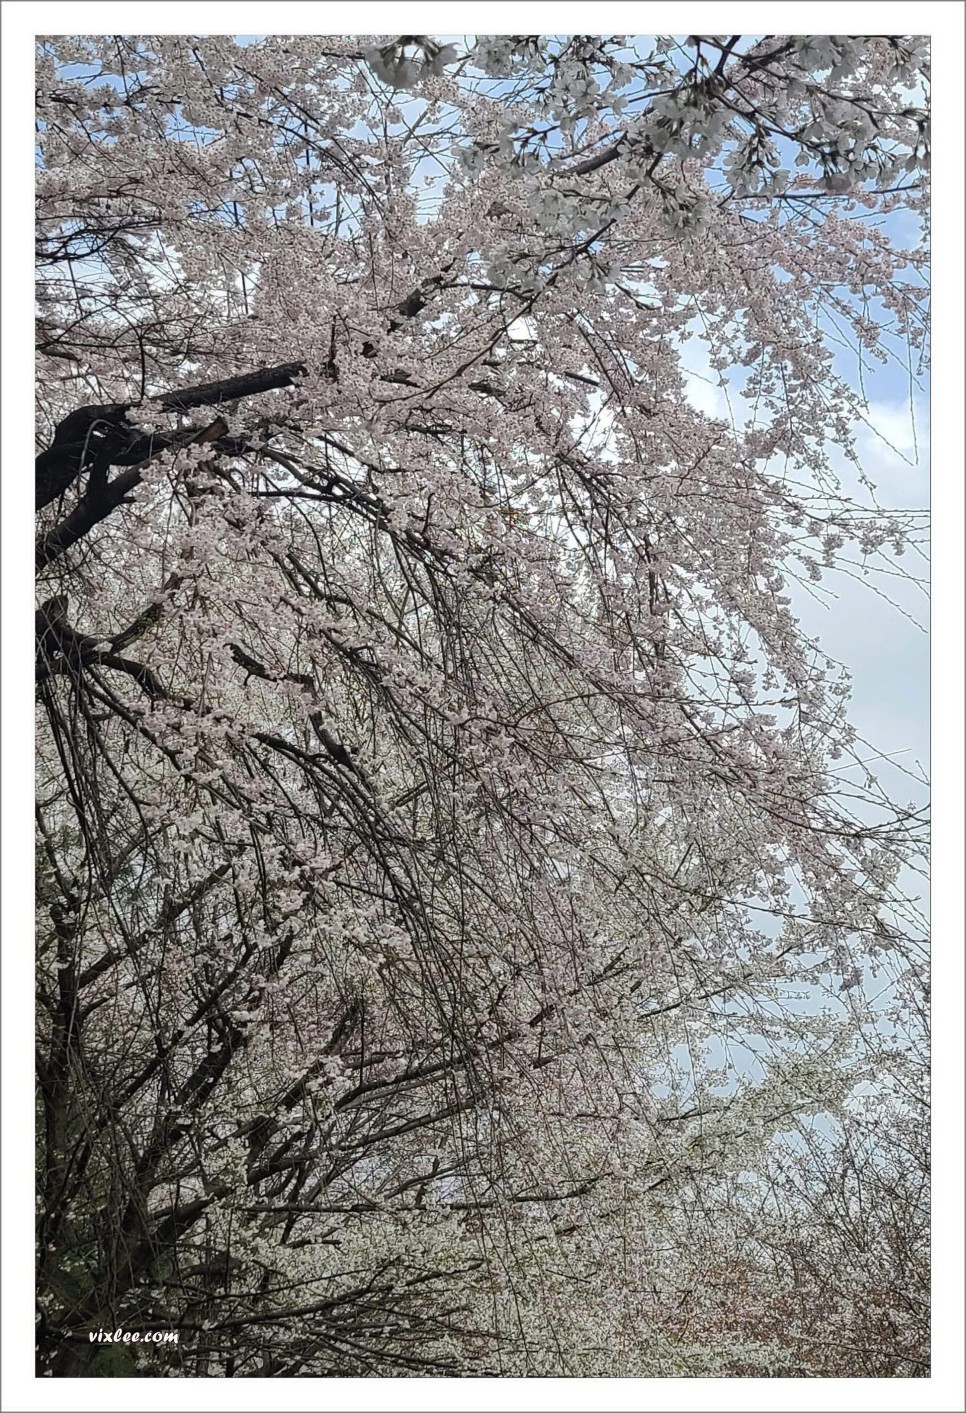 3.30. 장지천 벚꽃길 절반 만개, 왕벚나무, 수양벚꽃/능수벚꽃/처진올벚나무